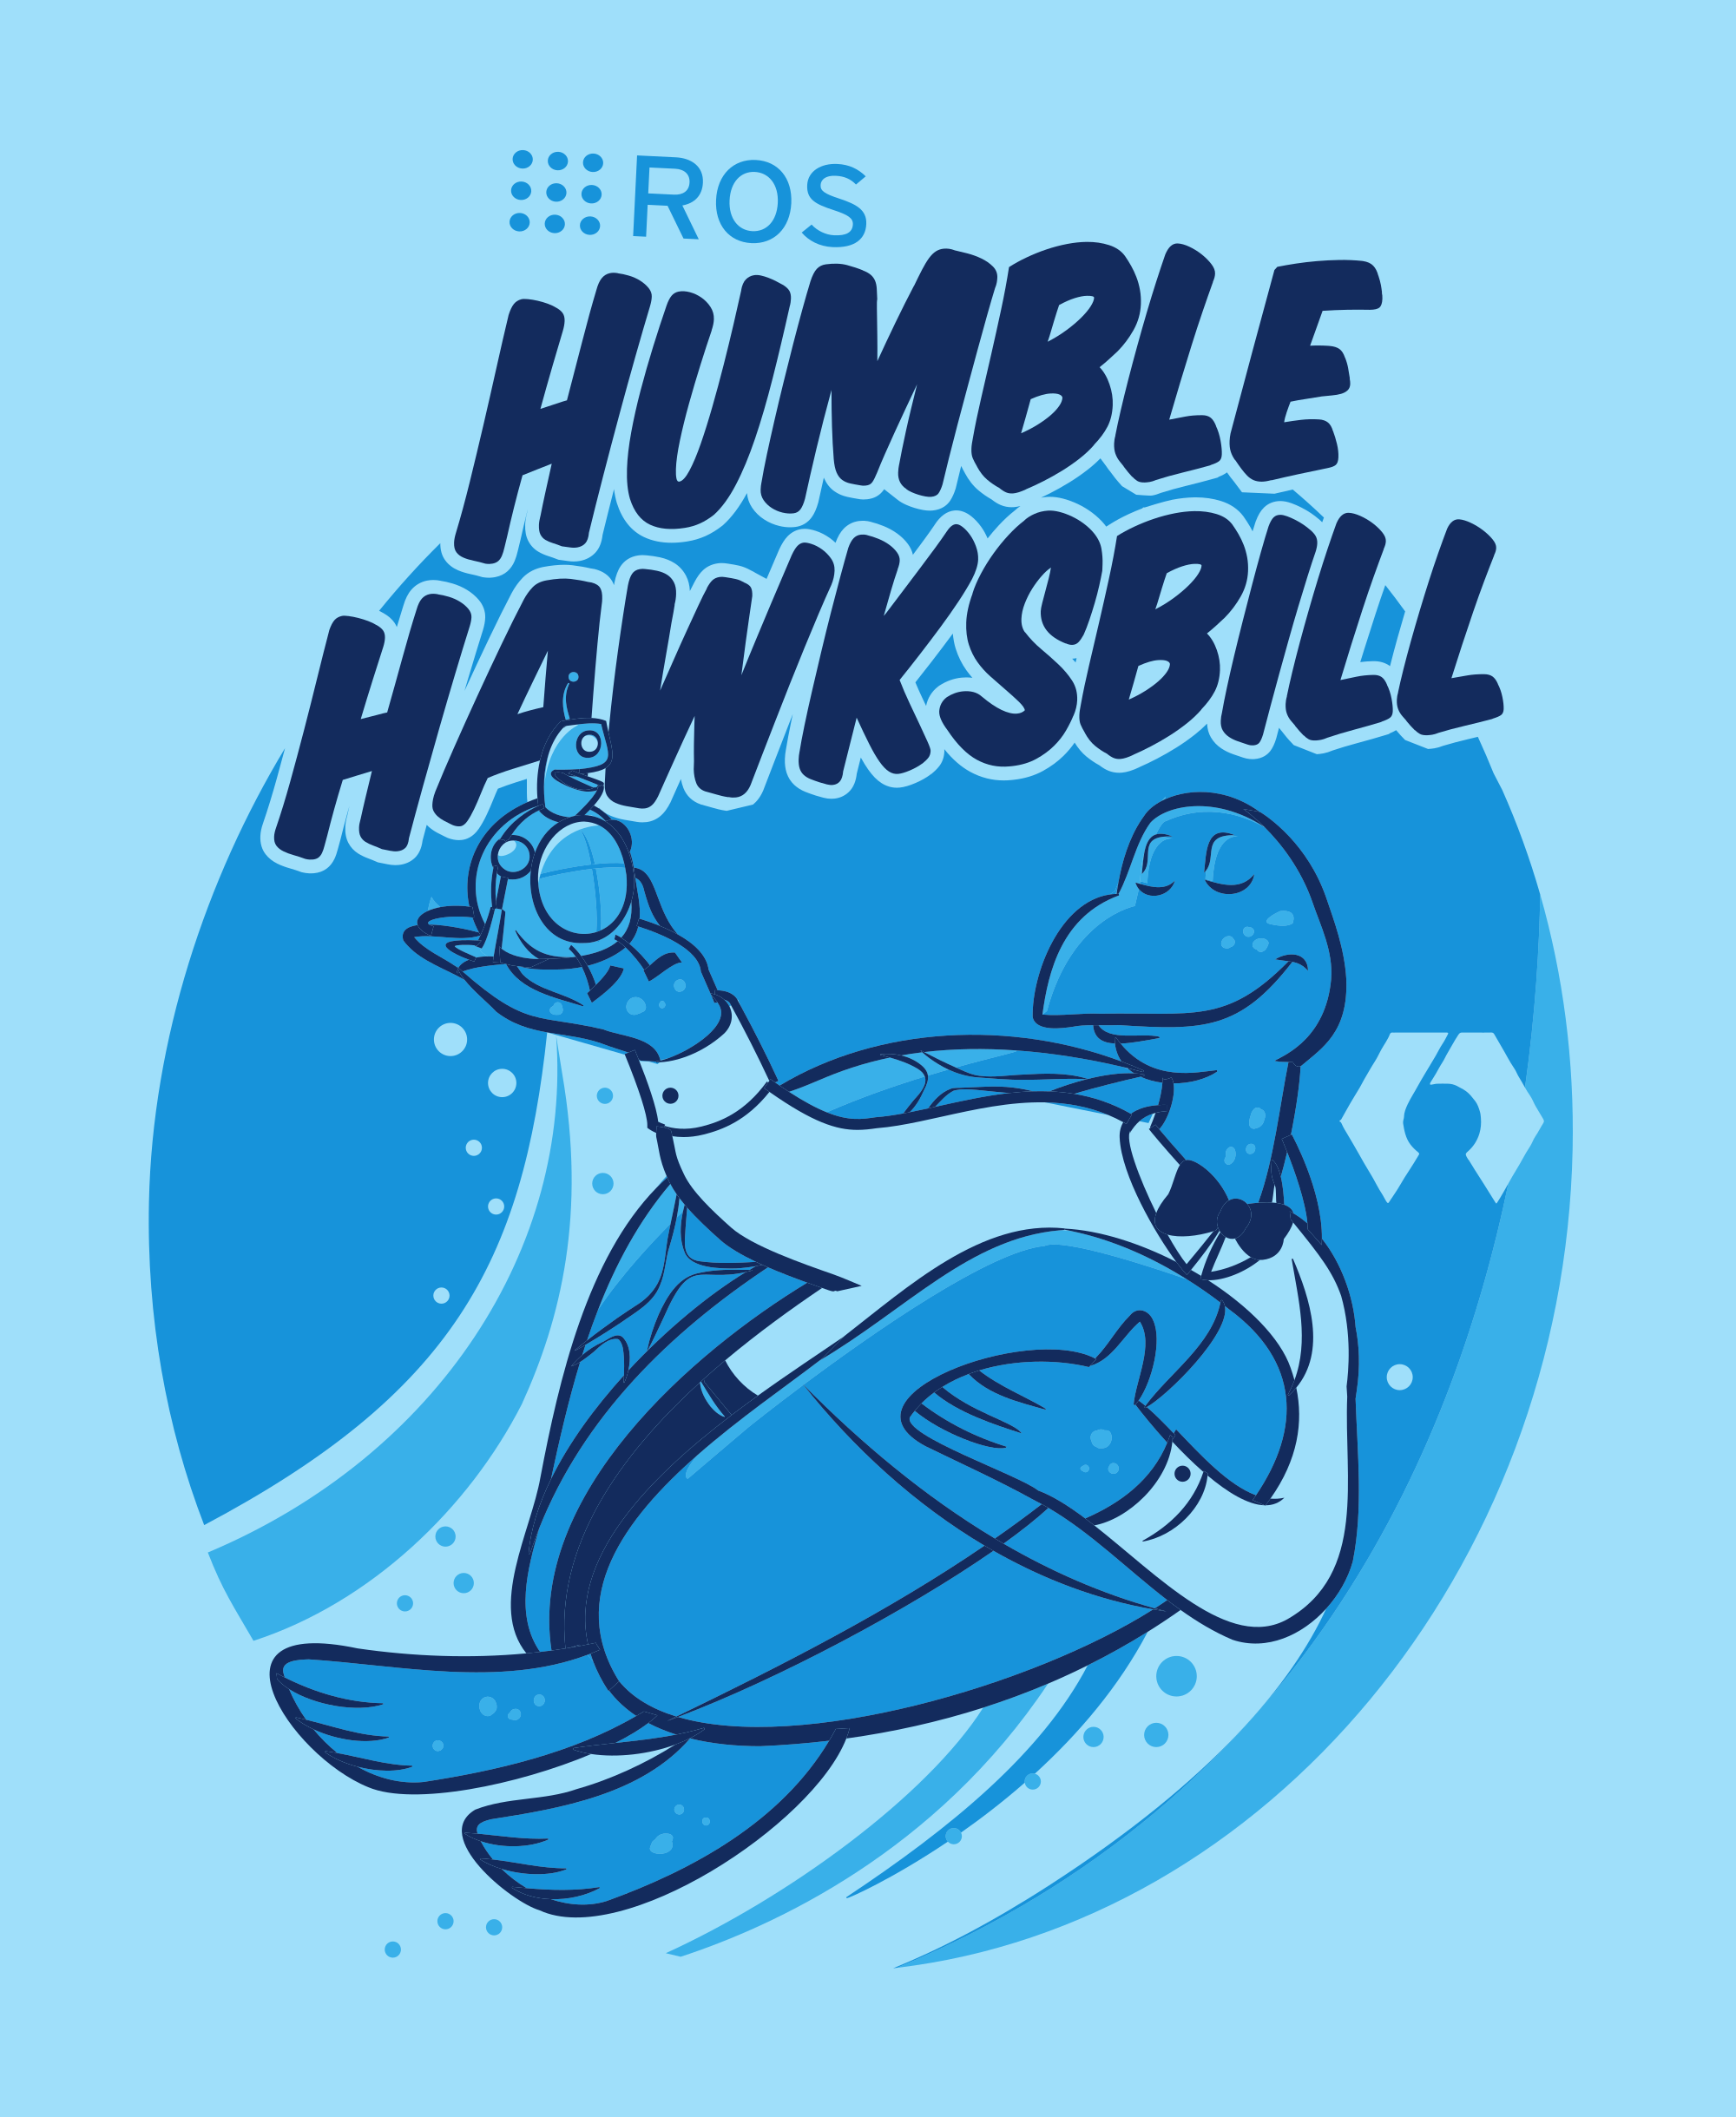 Humble Hawksbill